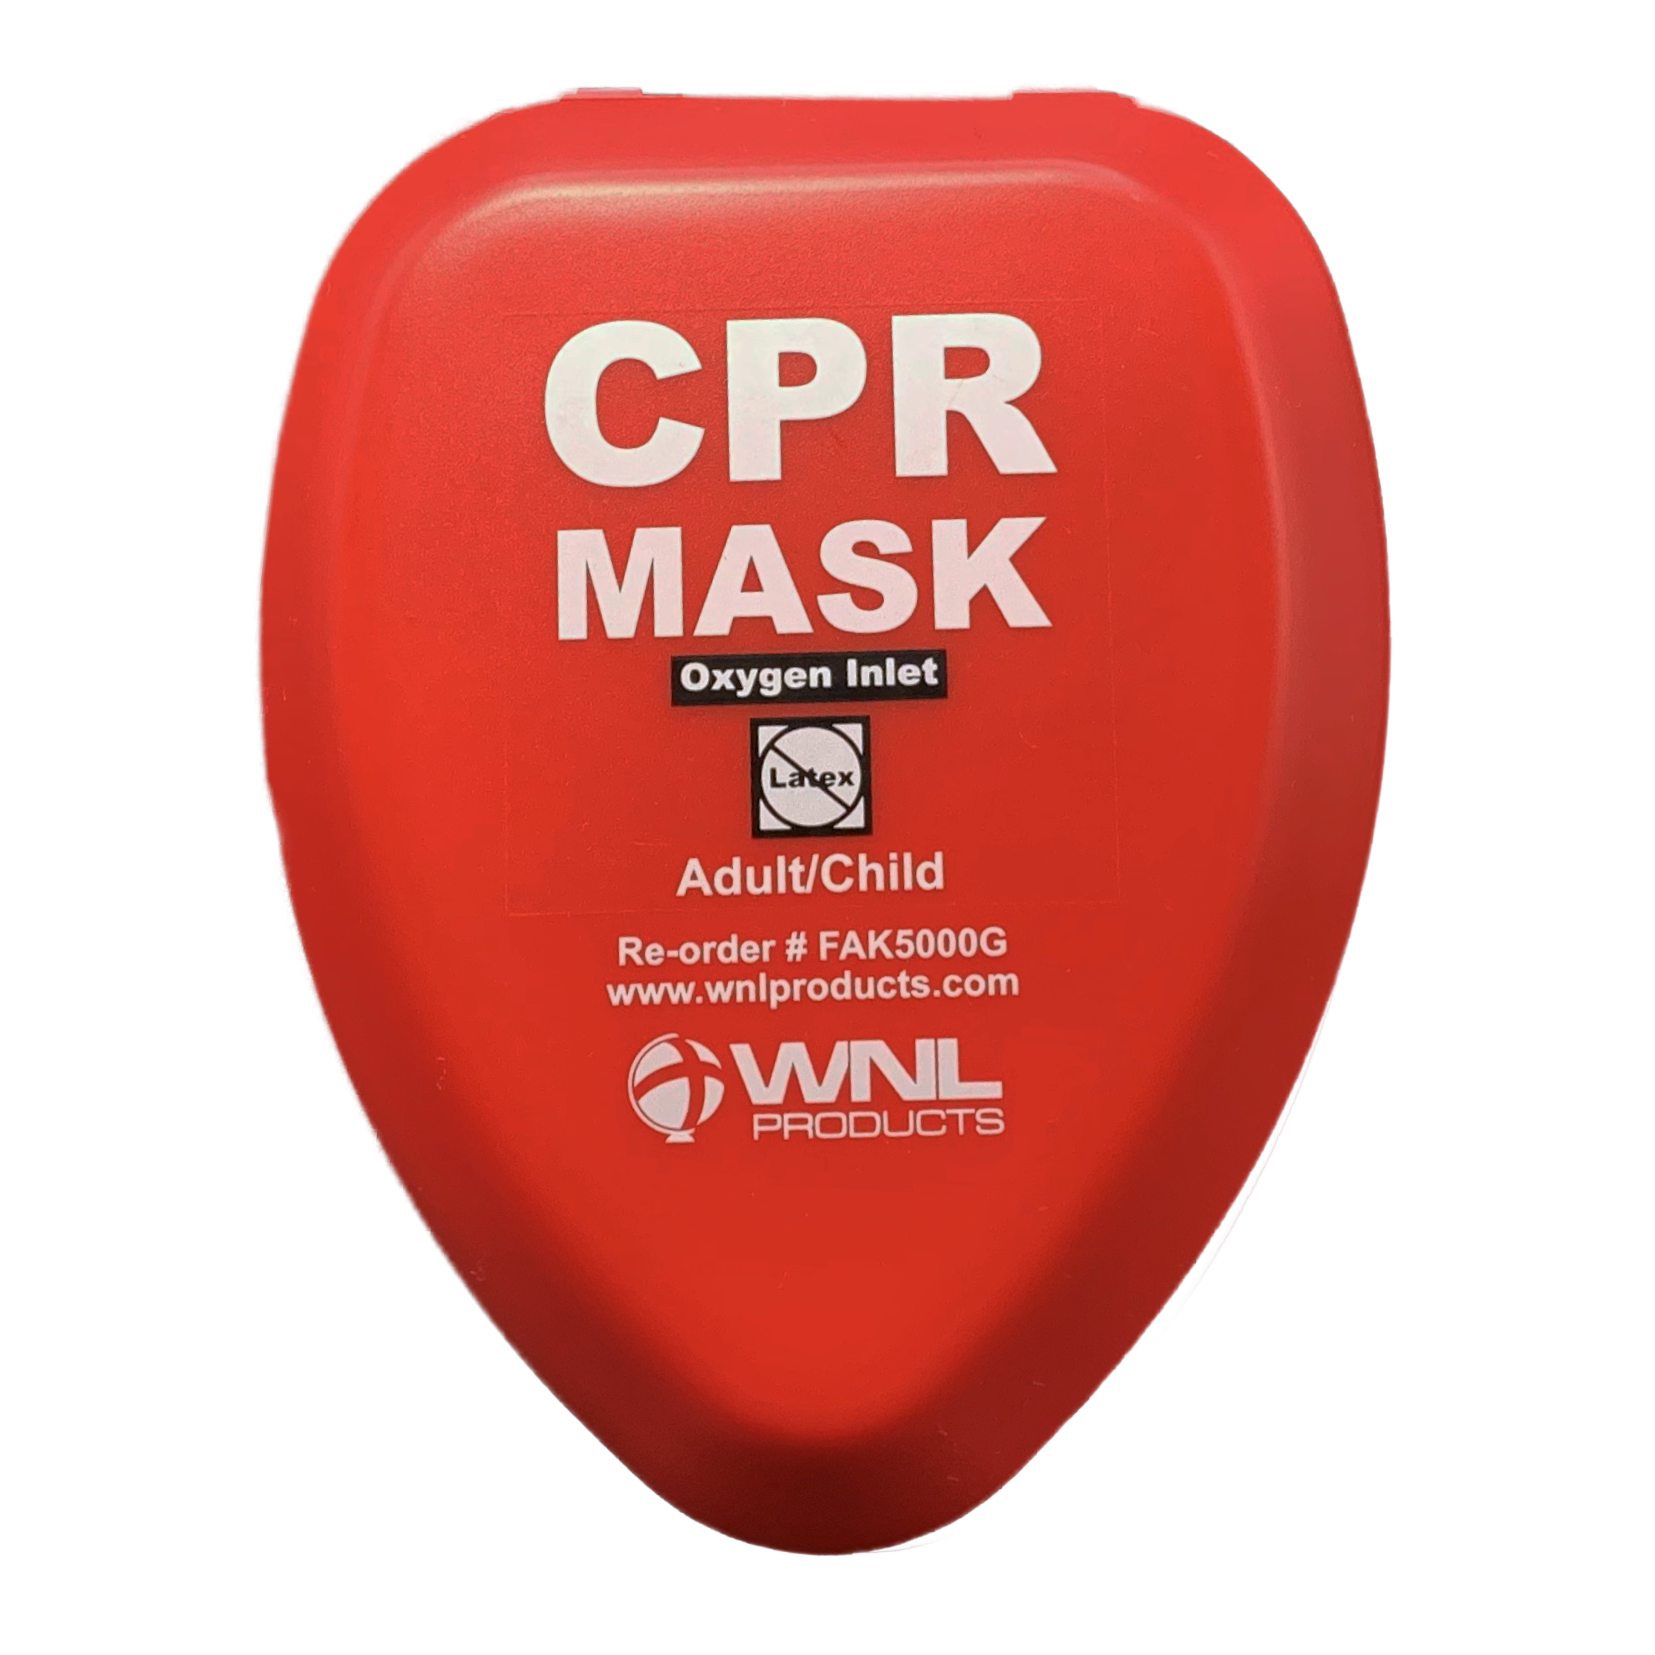 Adult/Child CPR resuscitator